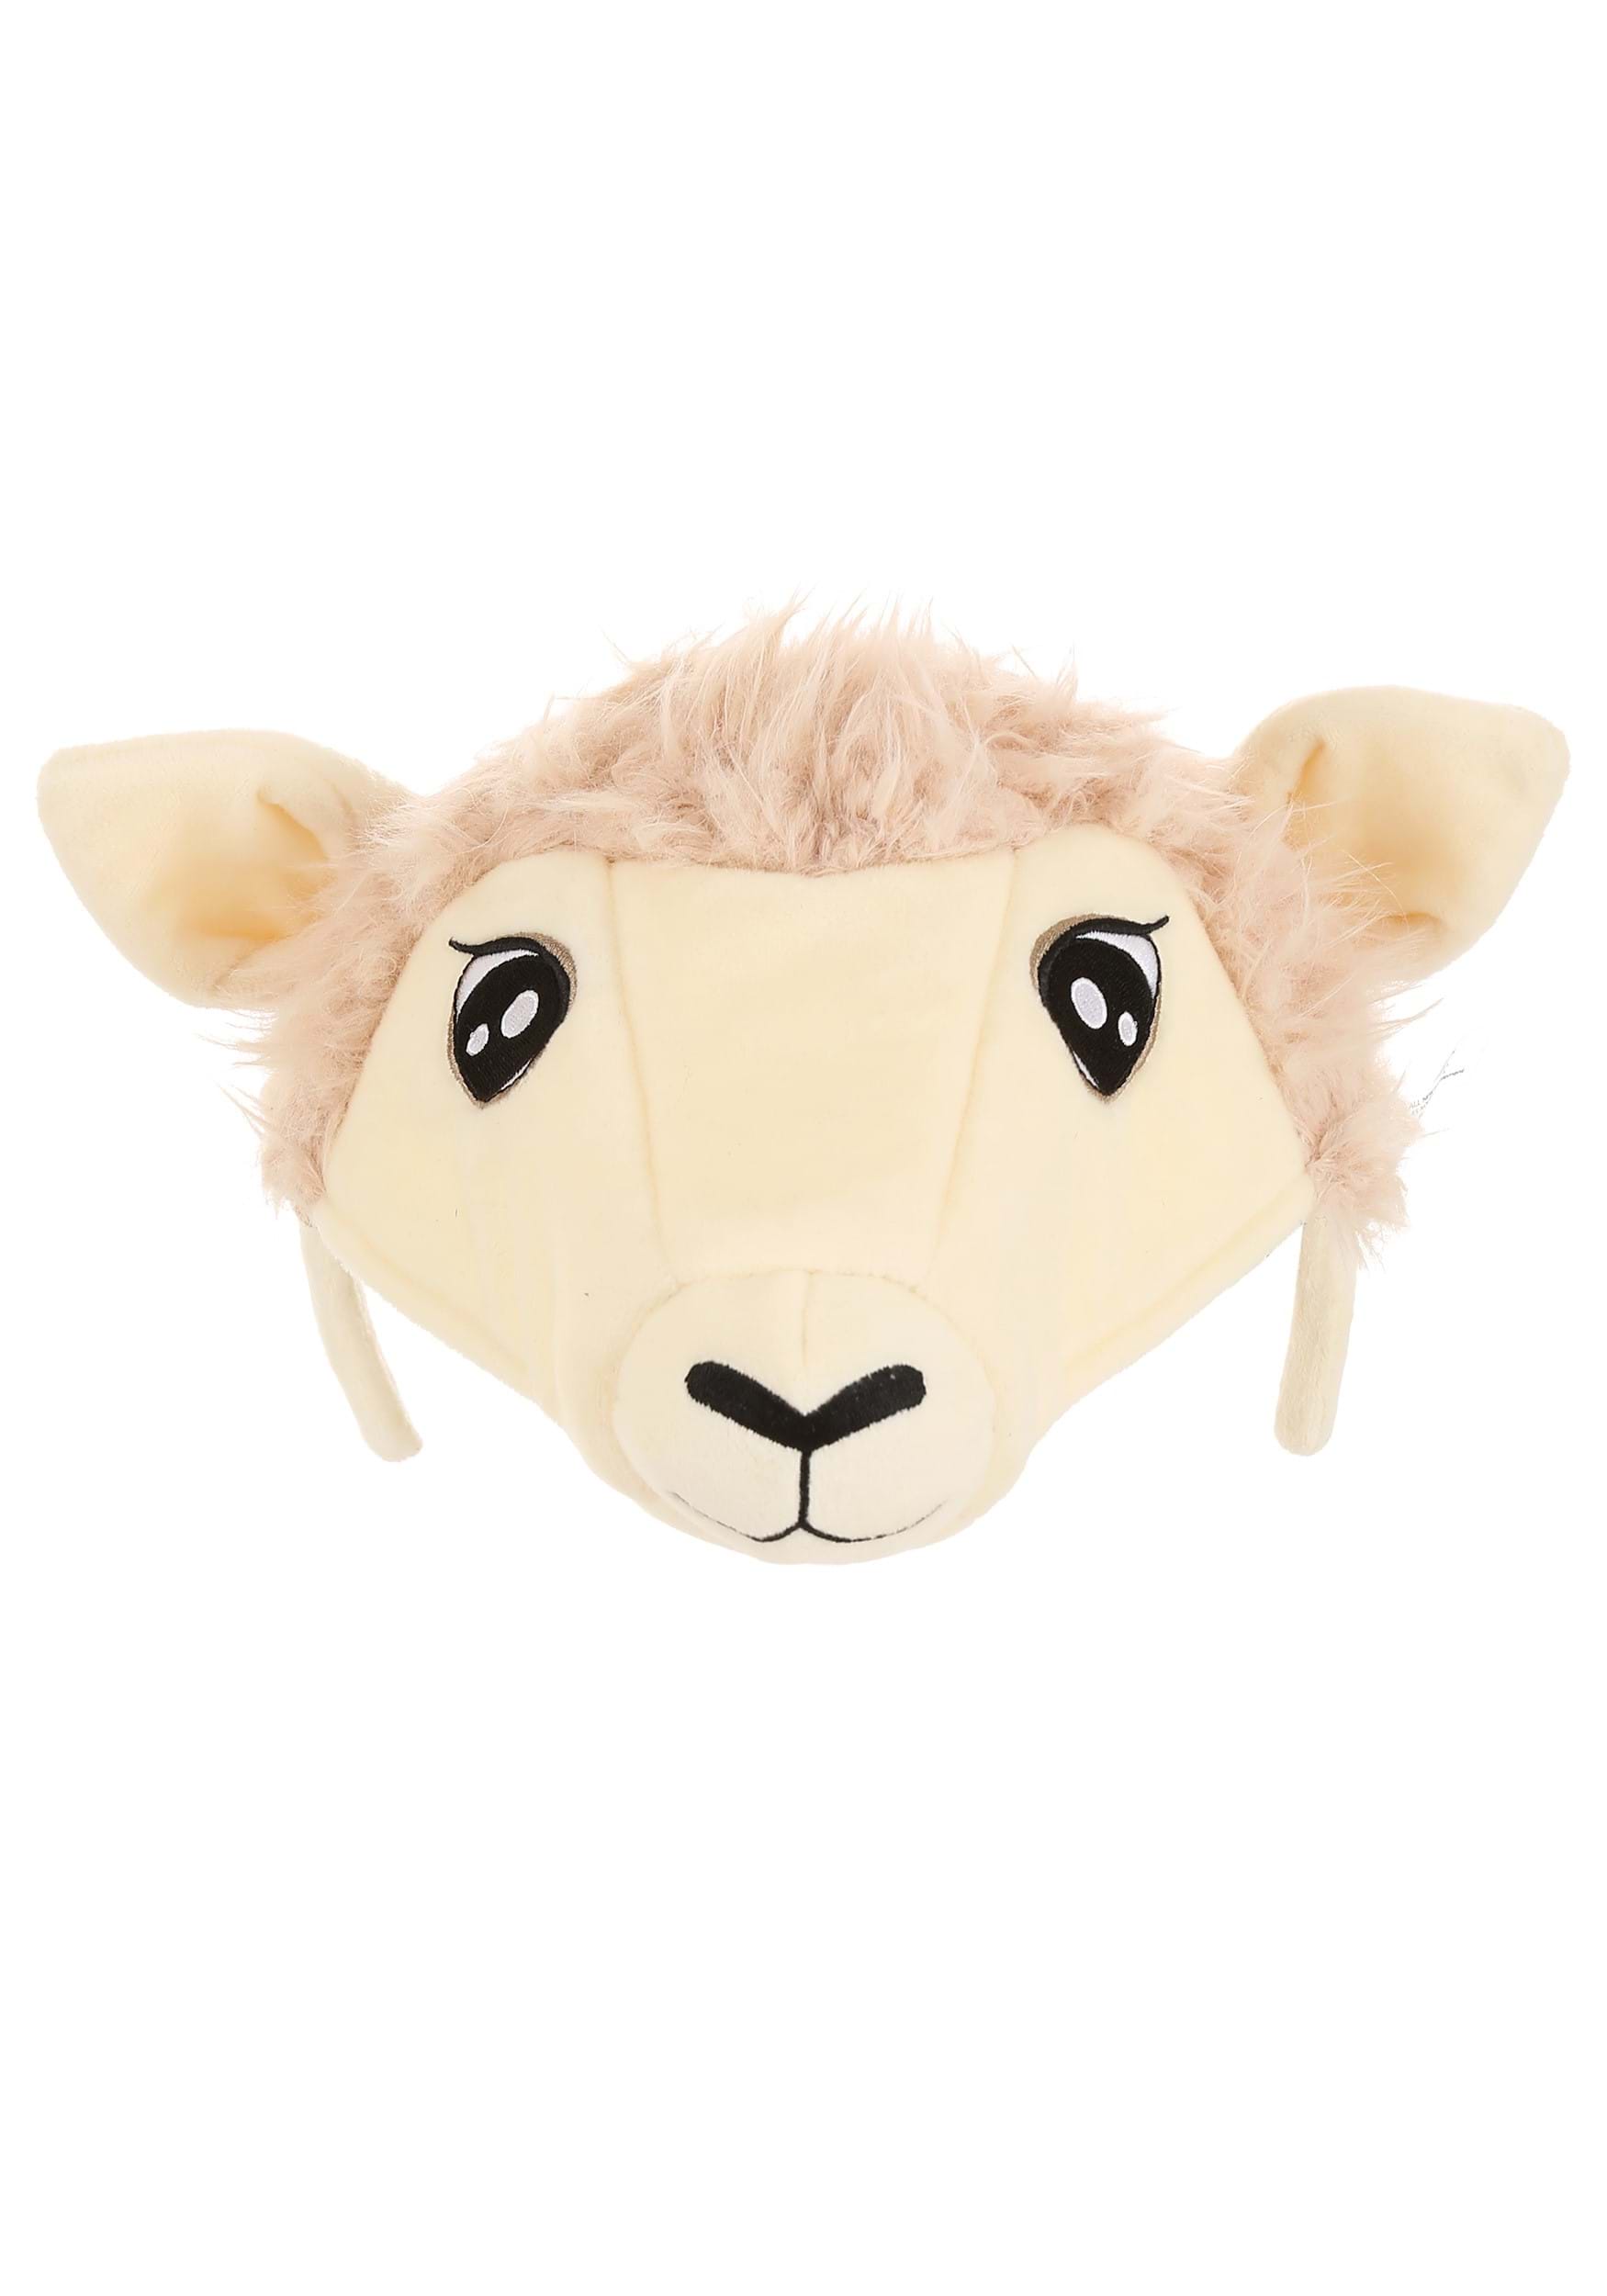 Sheep Plush Costume Headband